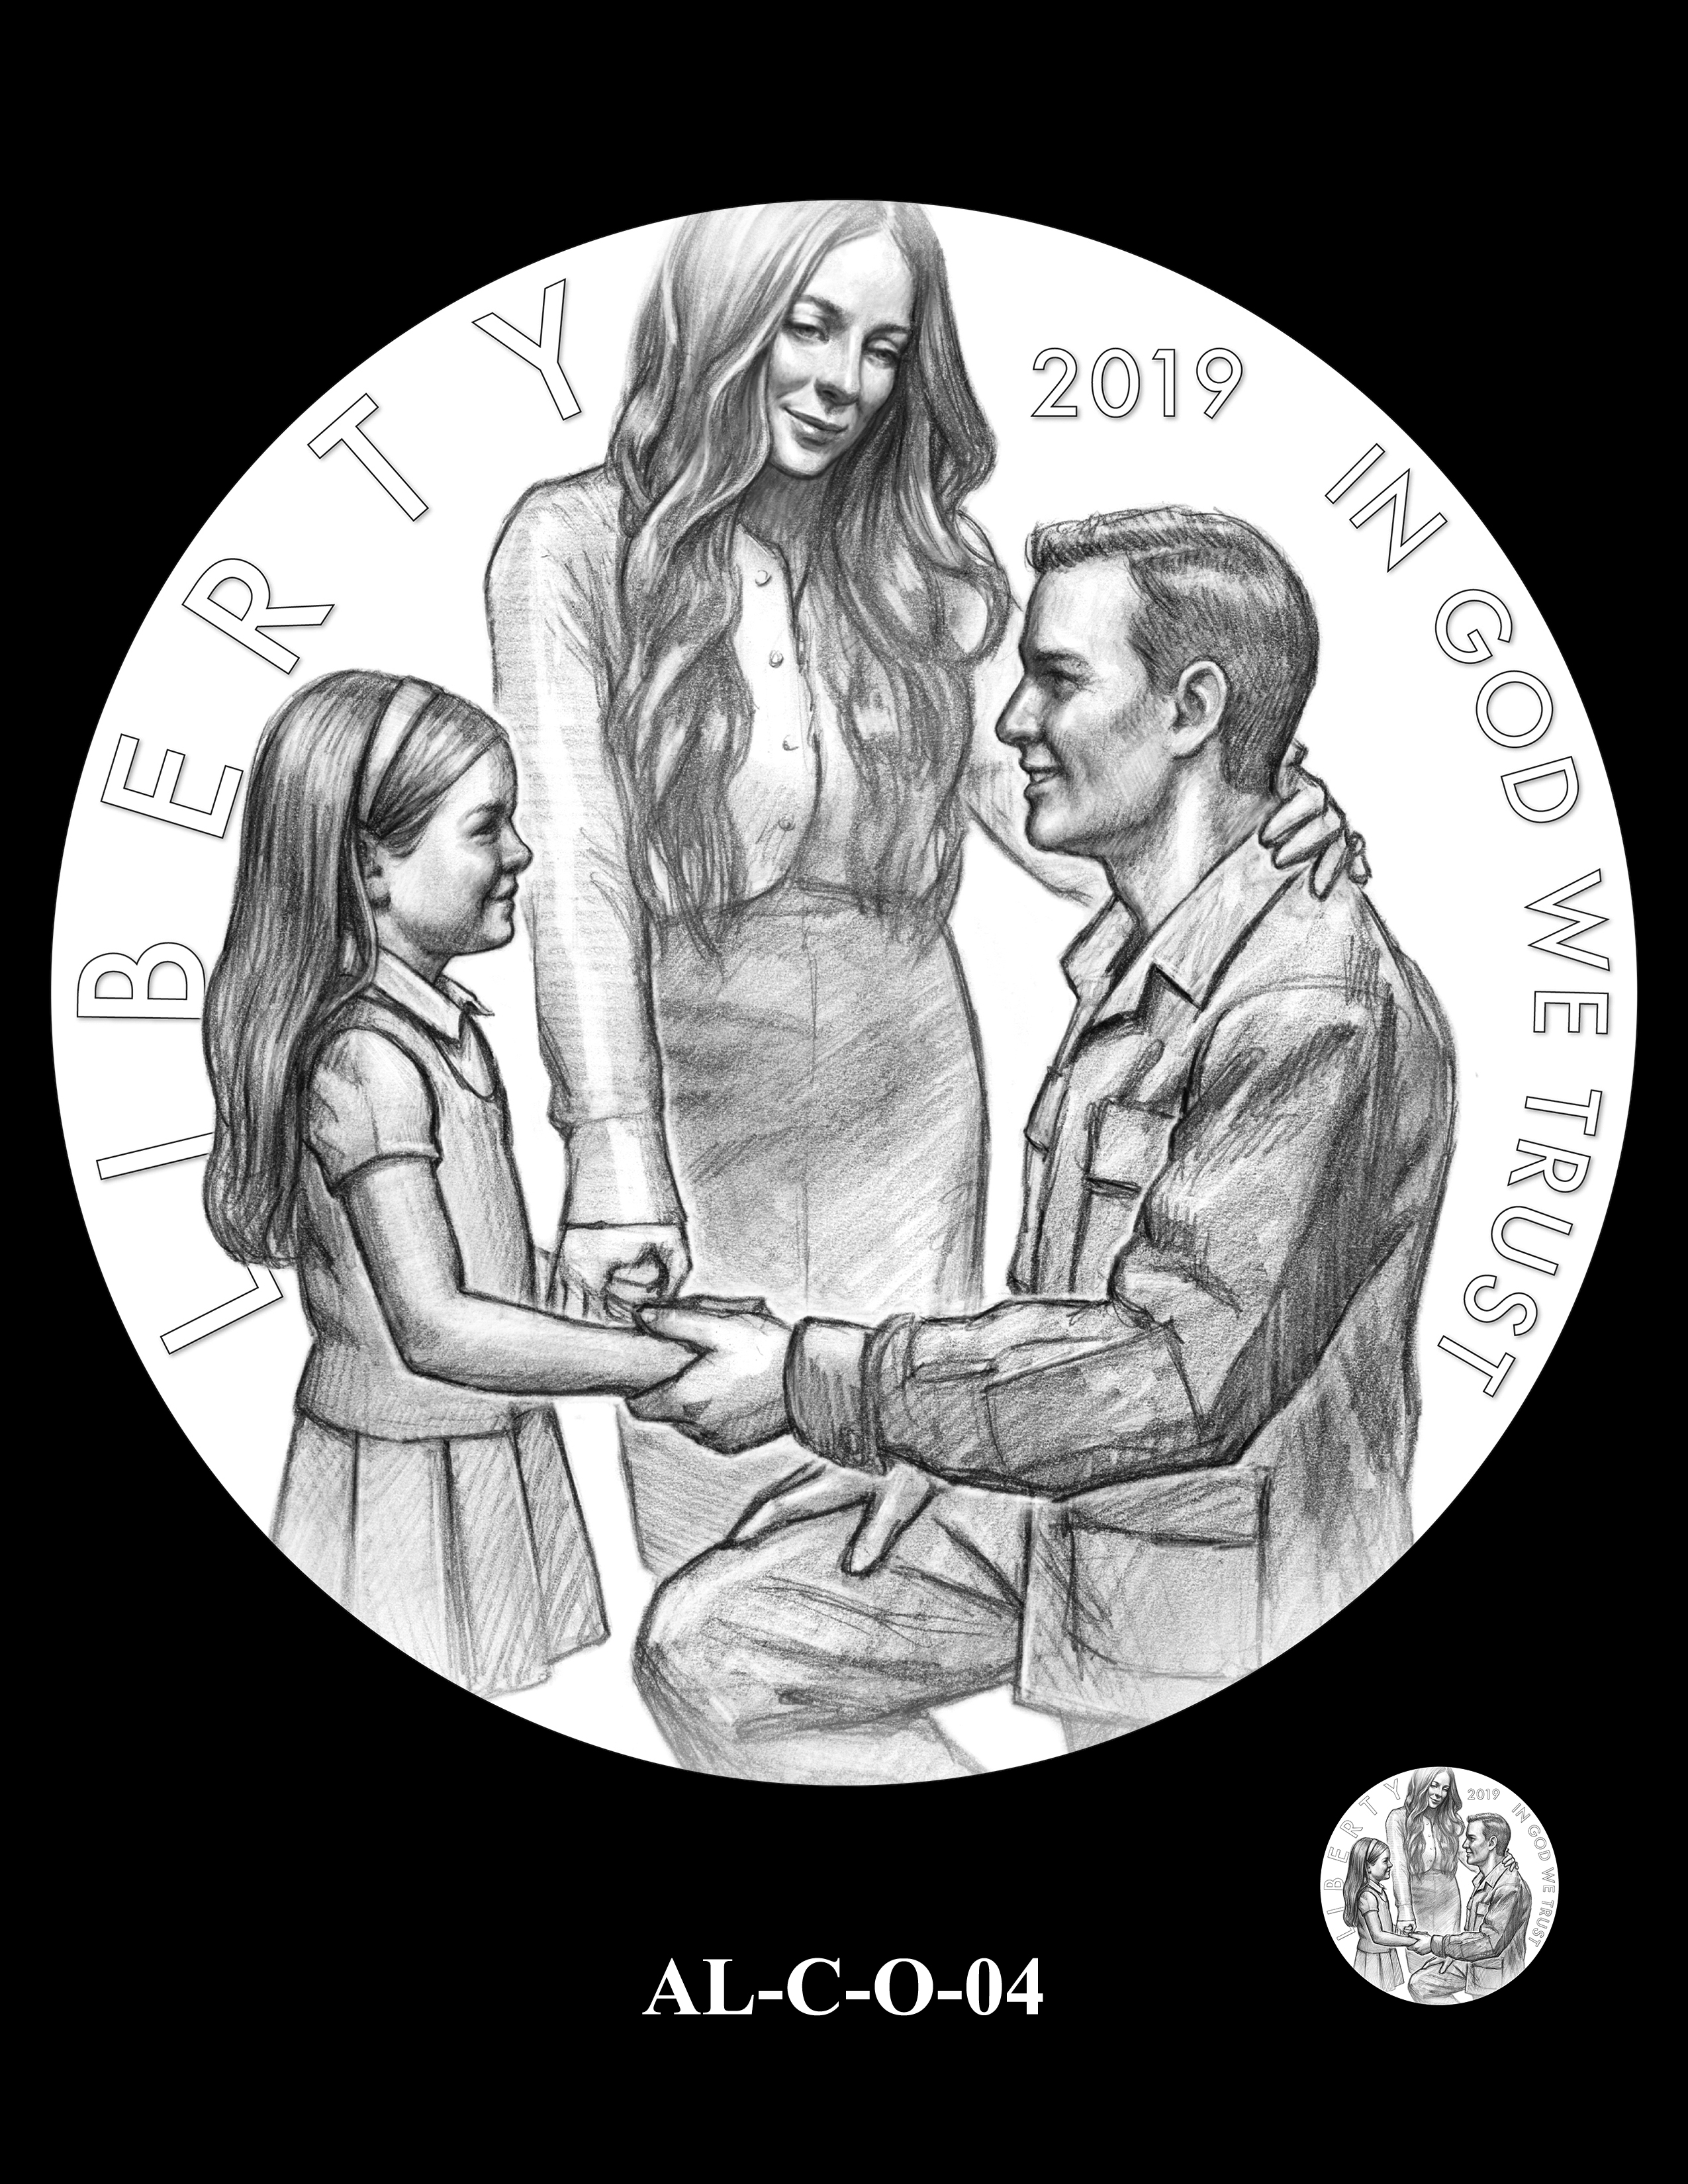 AL-C-O-04 -- 2019 American Legion 100th Anniversary Commemorative Coin Program - Clad Obverse